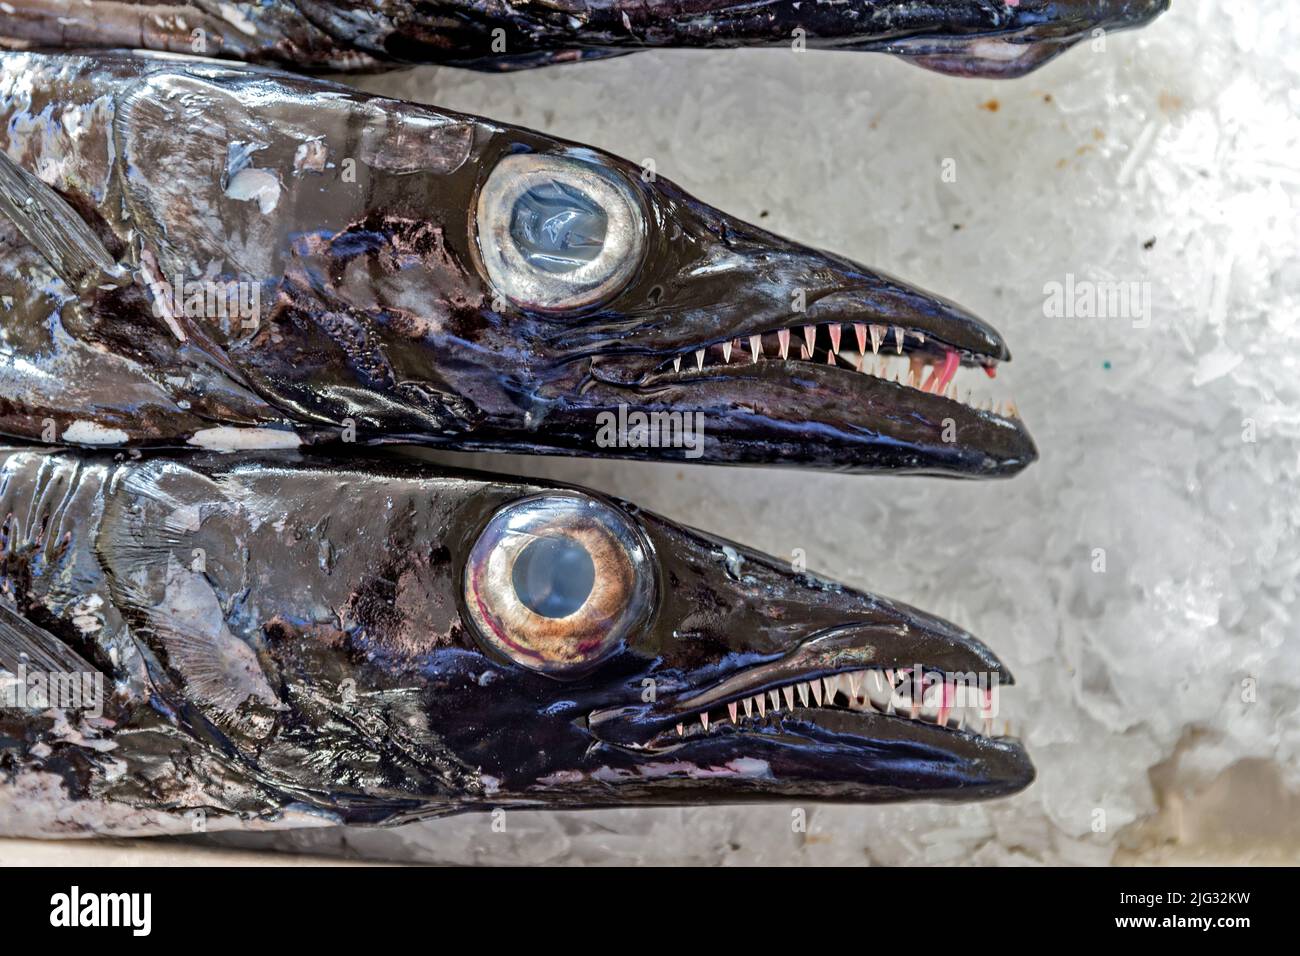 black scabbardfish, espada (Aphanopus carbo), fresh fish in the market, Mercado dos Lavradores, Madeira, Funchal Stock Photo